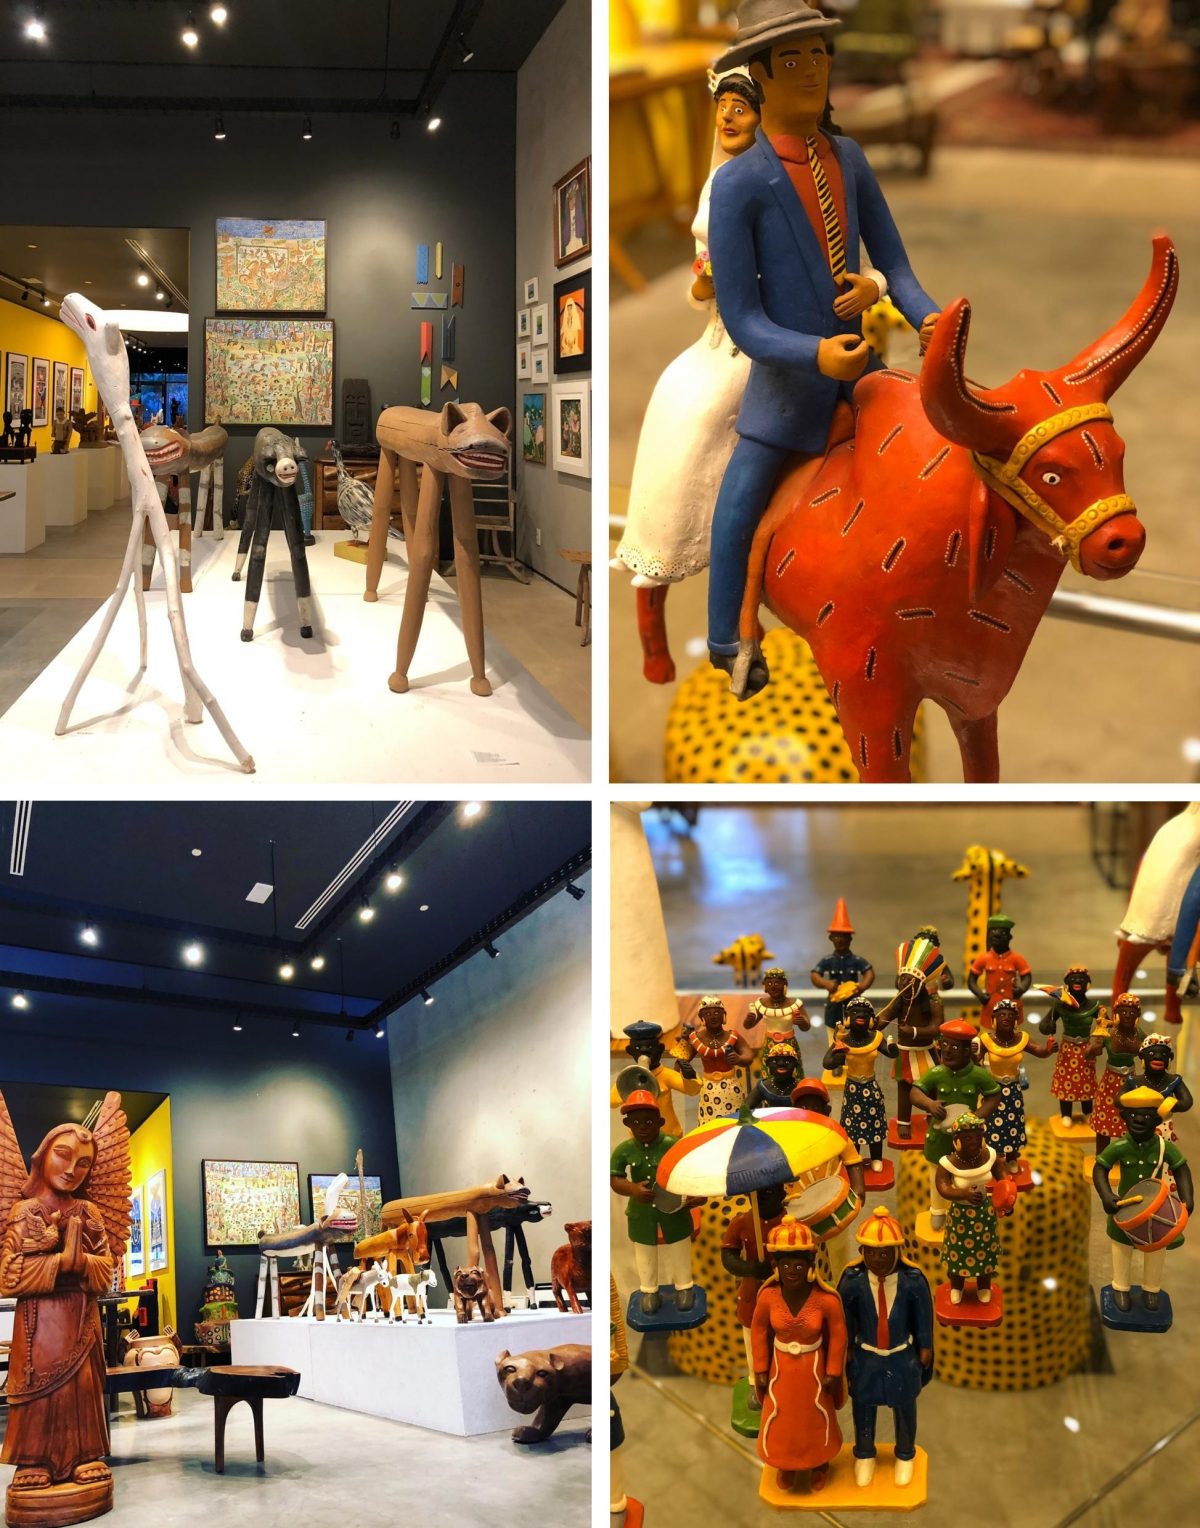 Continua em Brasília a exposição “A arte do povo brasileiro”